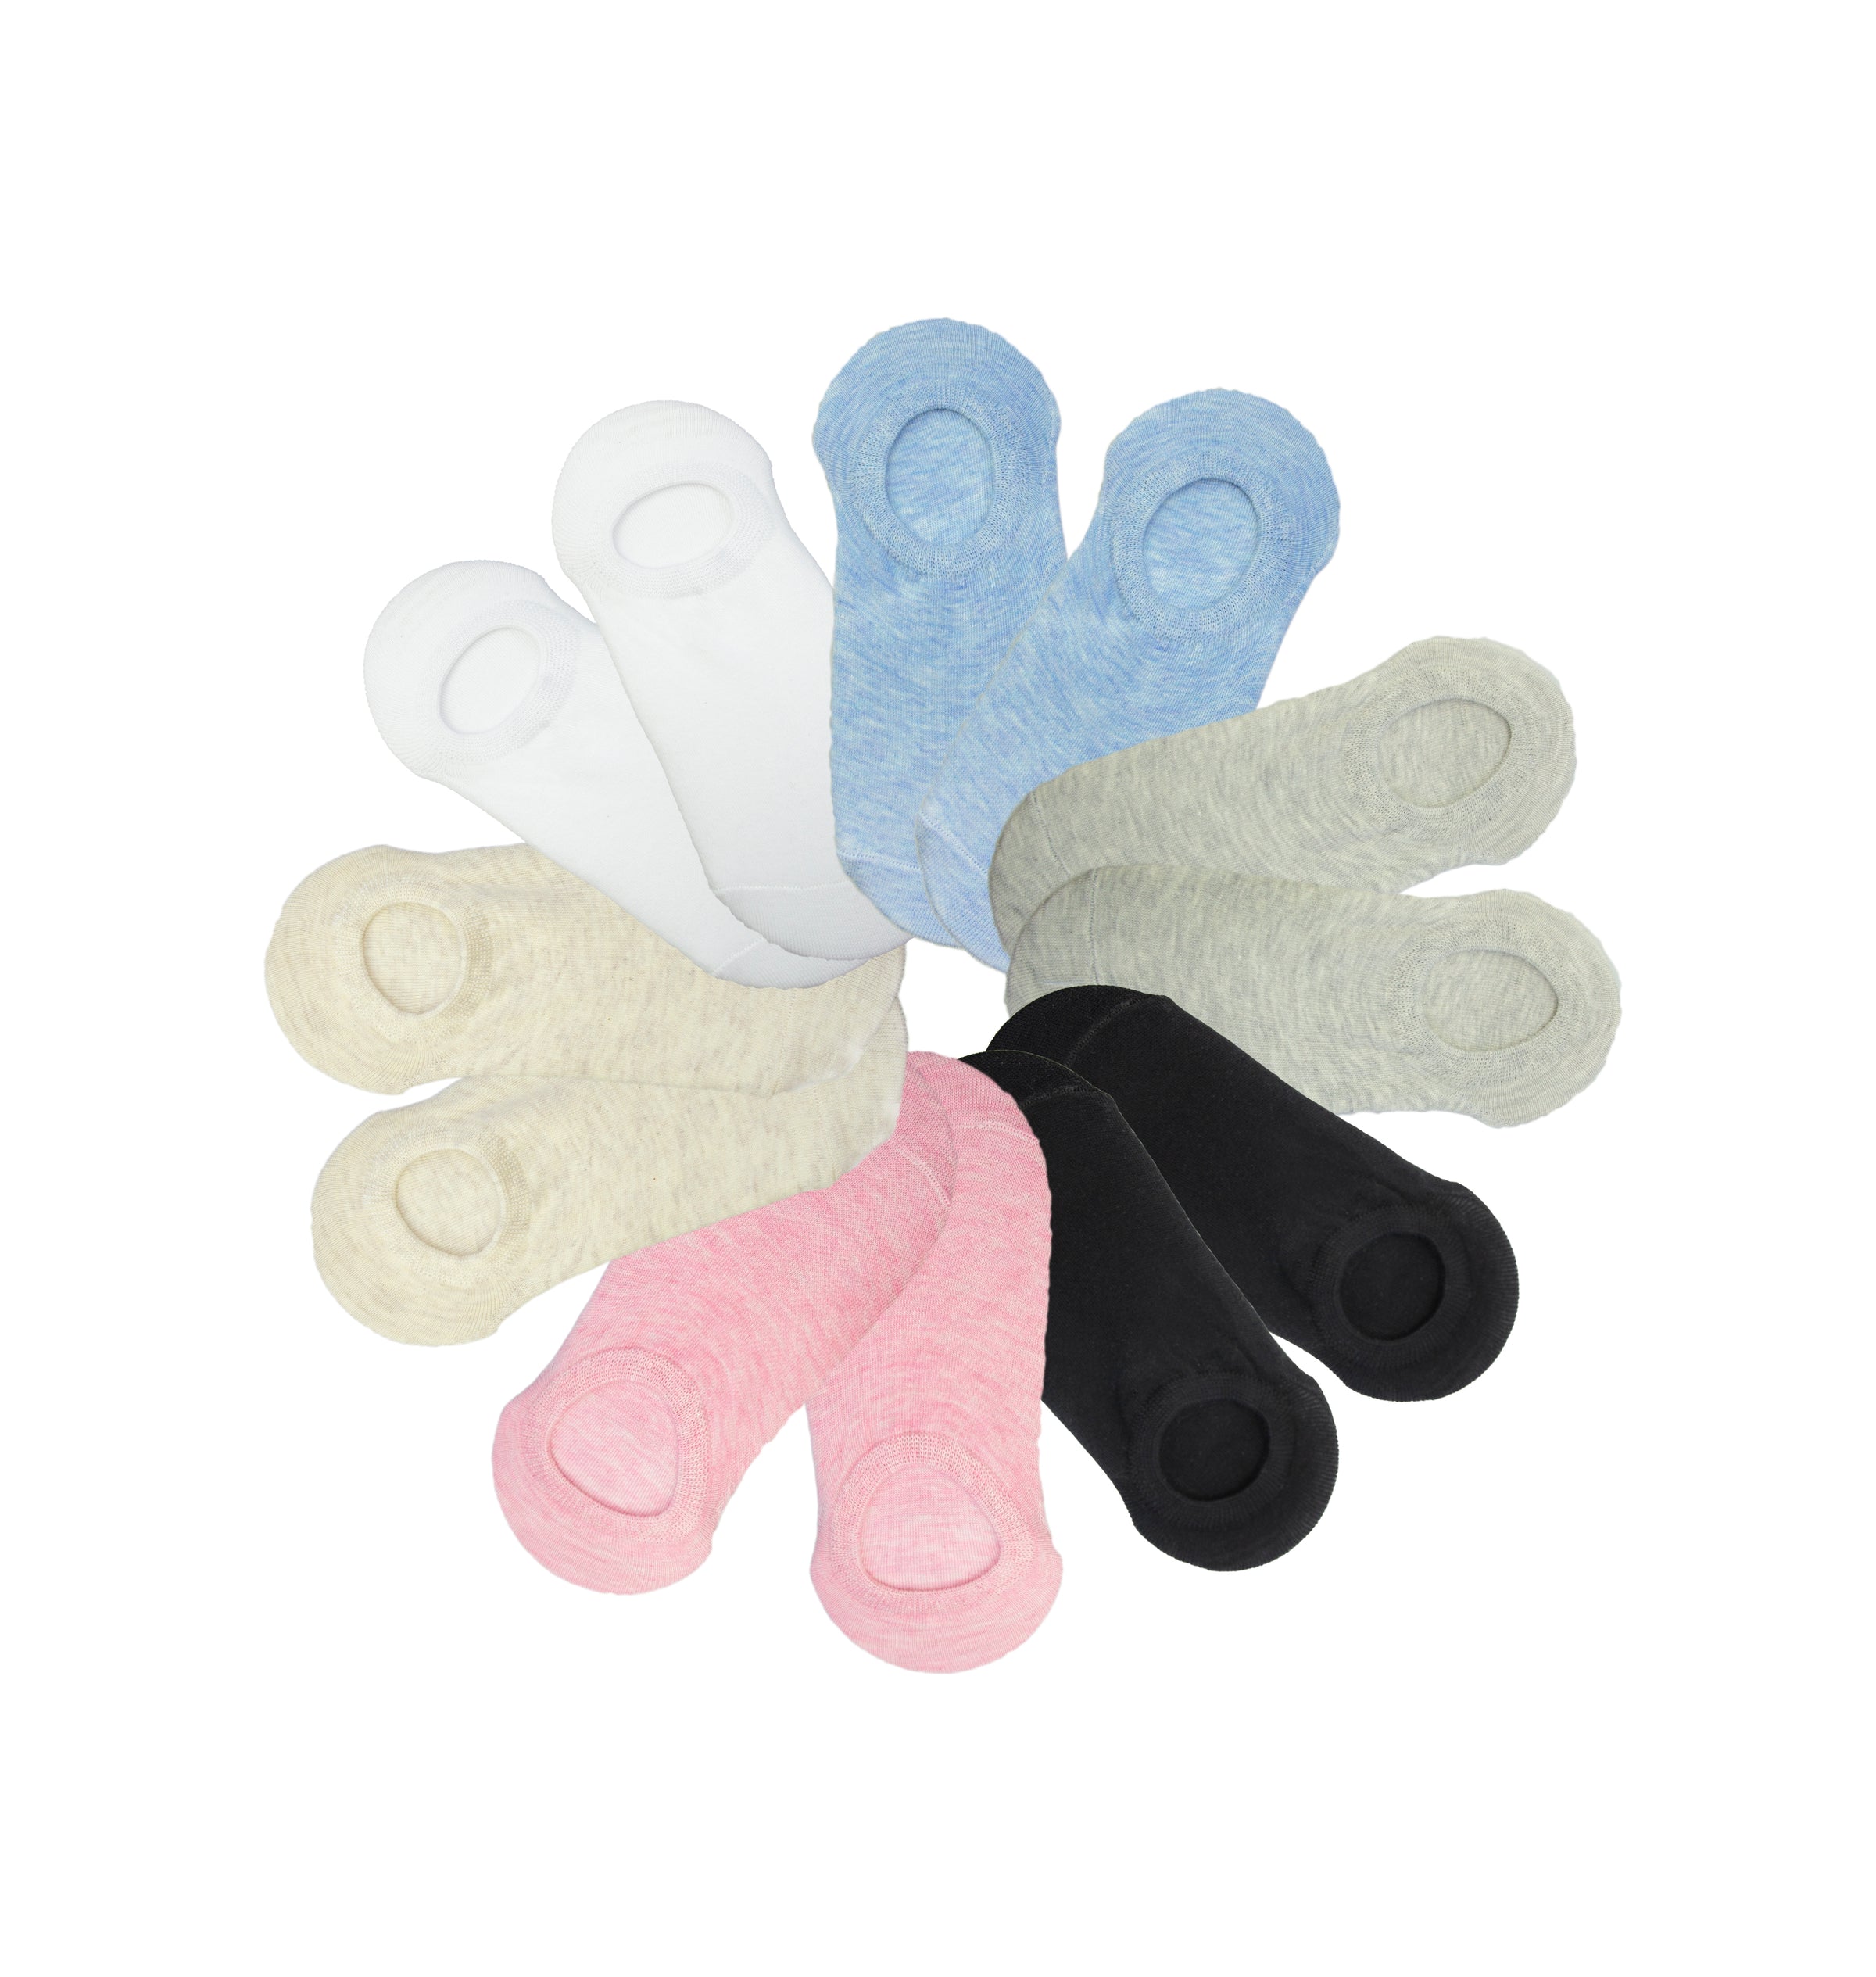 Calcetines Corto Mujer Algodon Pack de 12 Talla única 35-40 – Channo